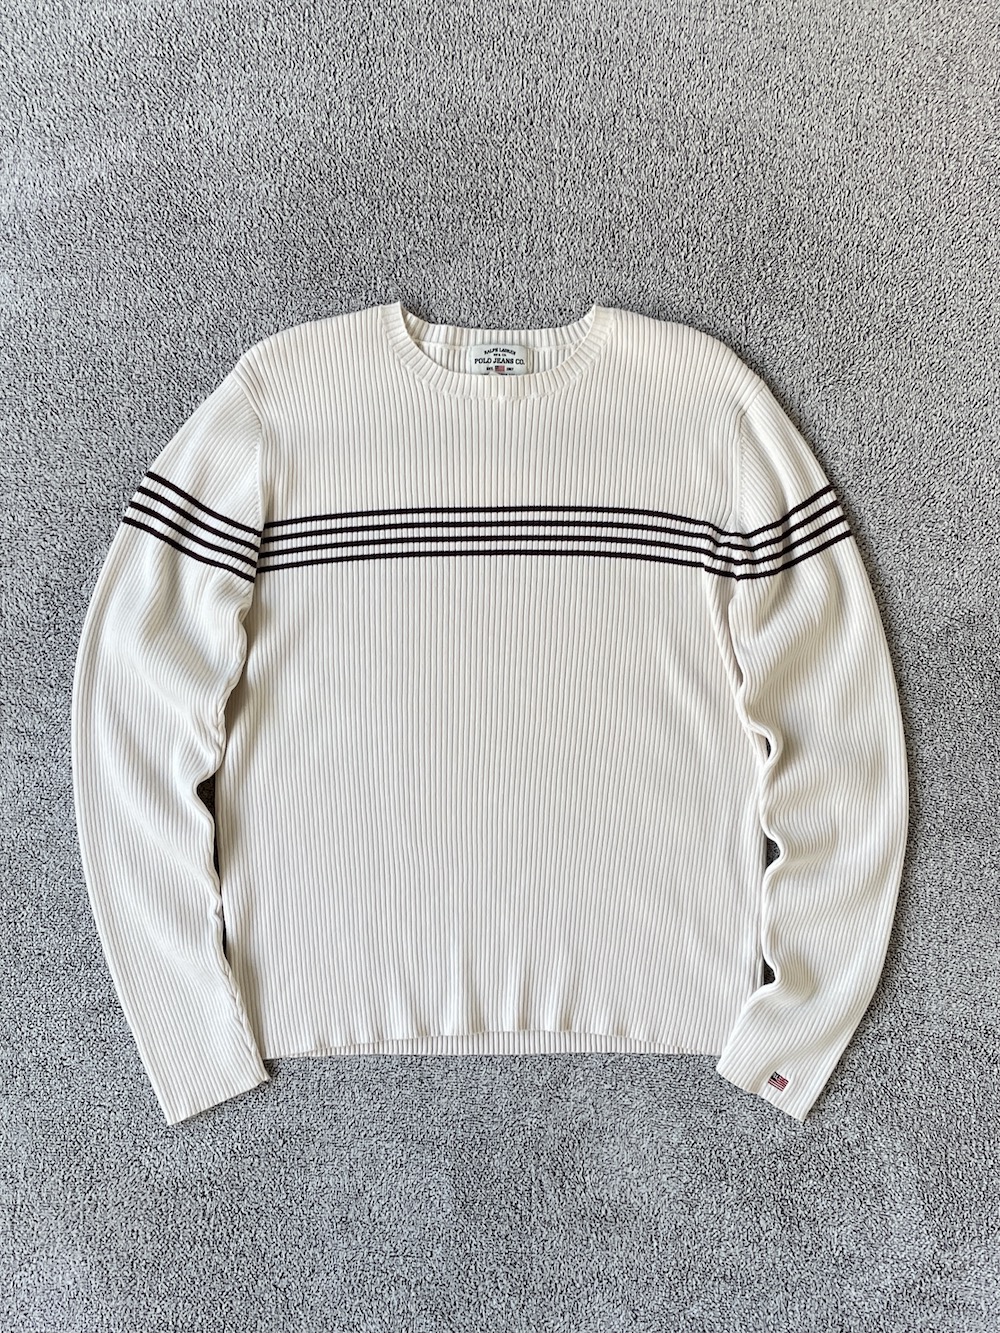 [ XXL ] Polo Ralph Lauren Sweater (6426)